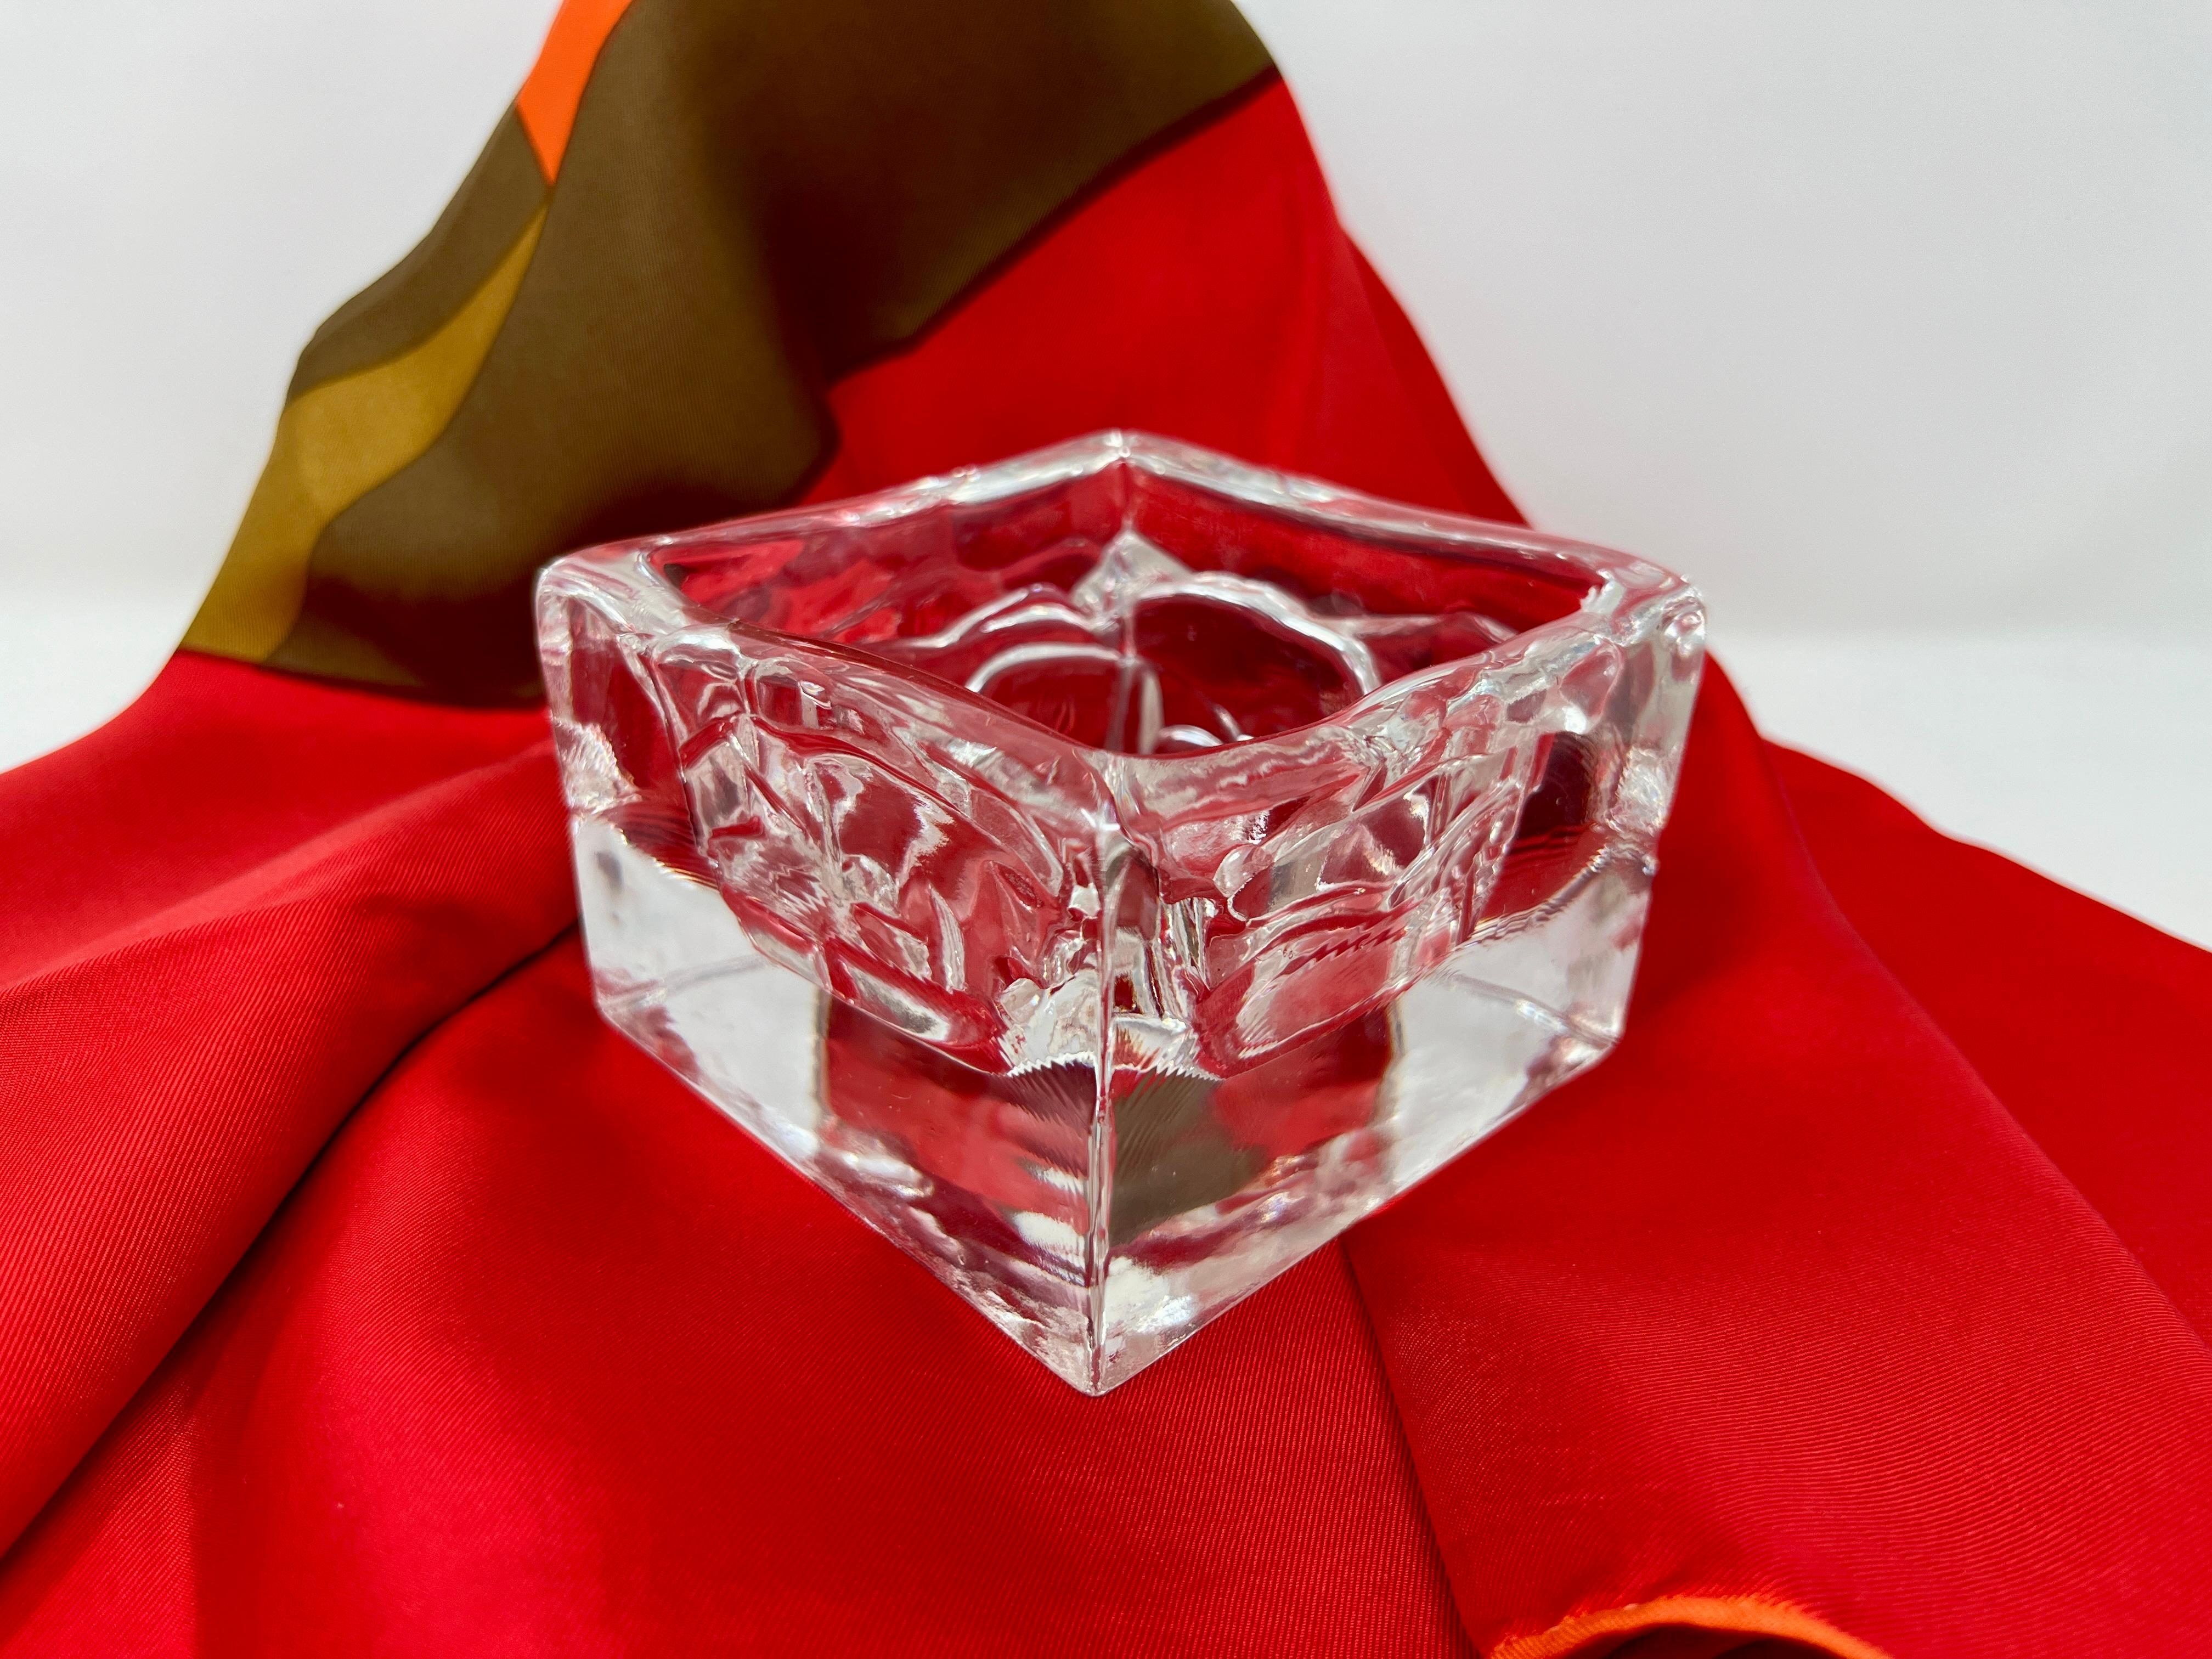 Scandinave moderne Nuutajärvi Arktis Bowl Small by Björn Weckström, Scandinavian Modern Art Glass en vente